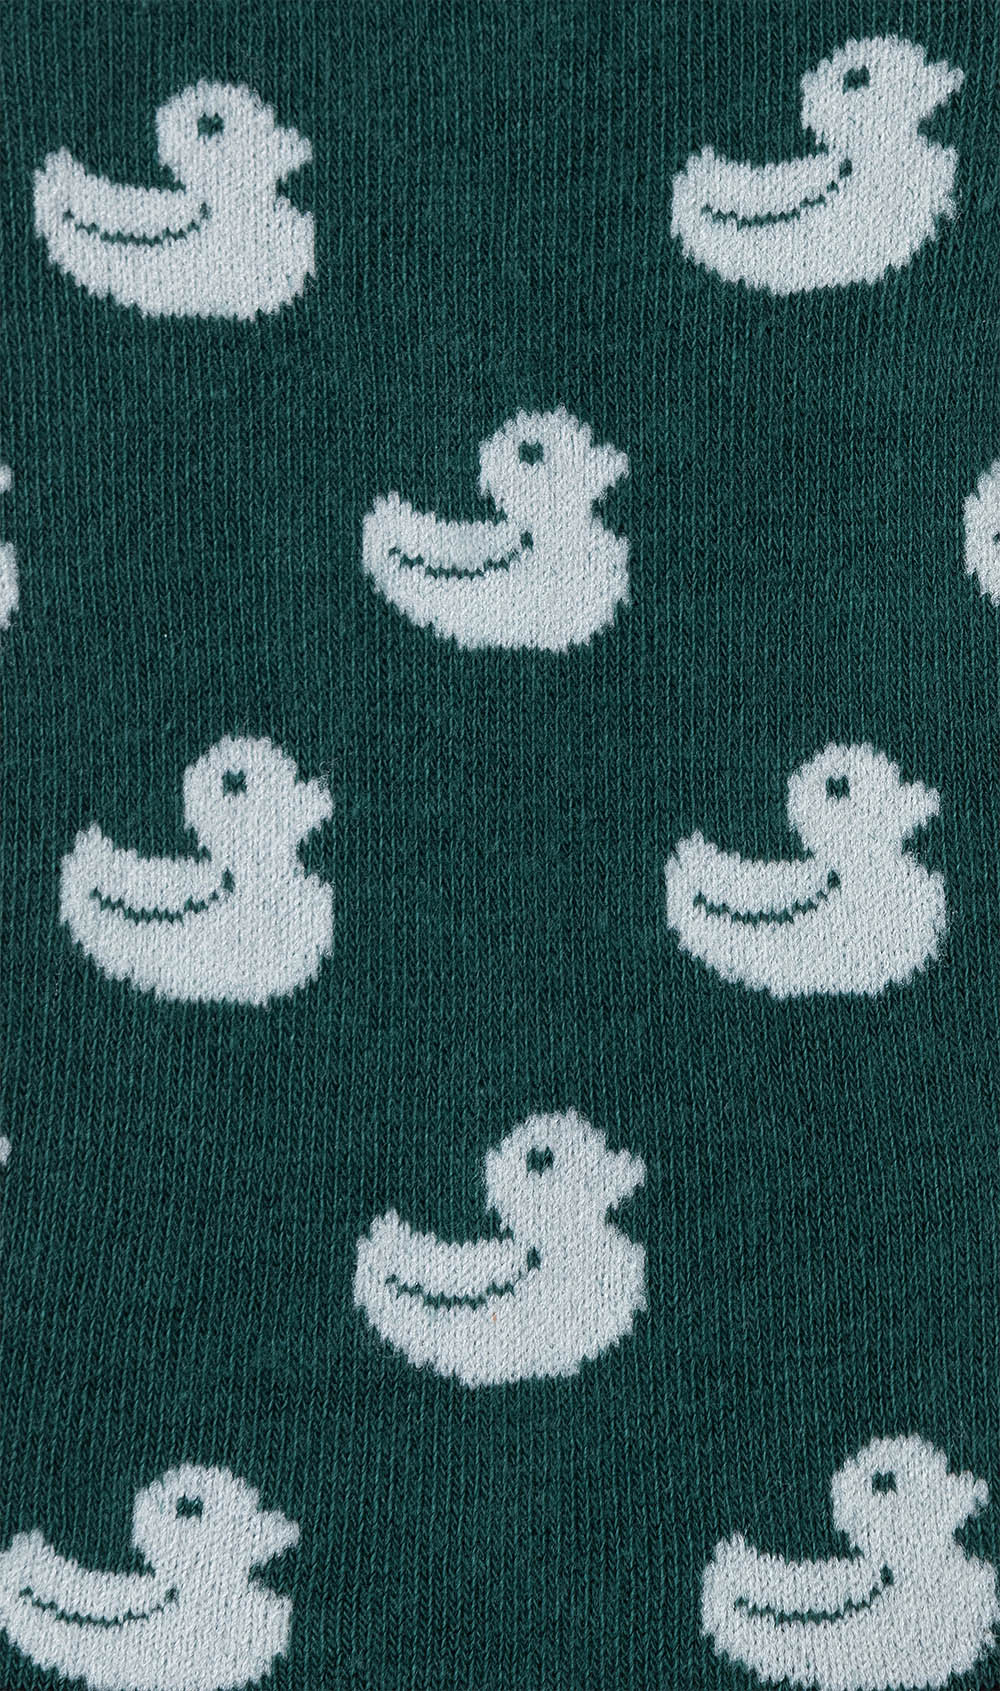 Forest Green Duckling Low Cut Socks Pattern